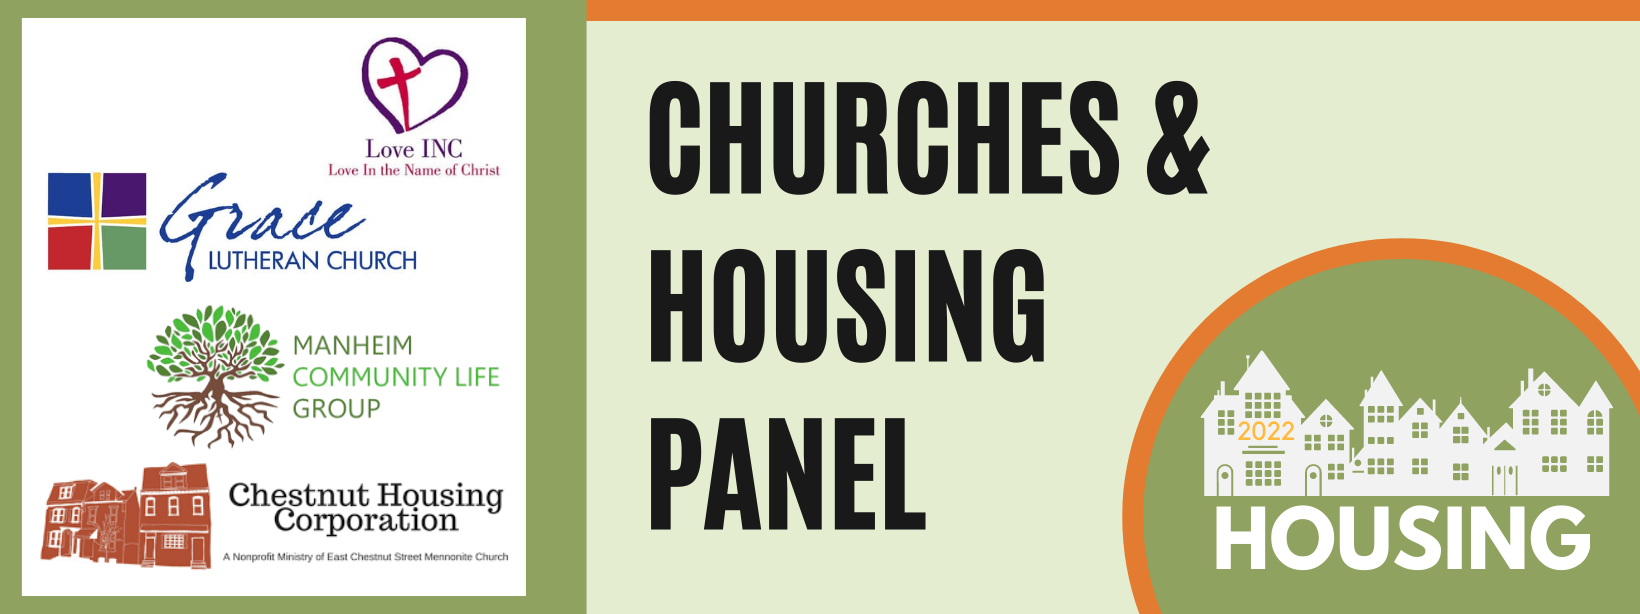 Churches & Housing Panel